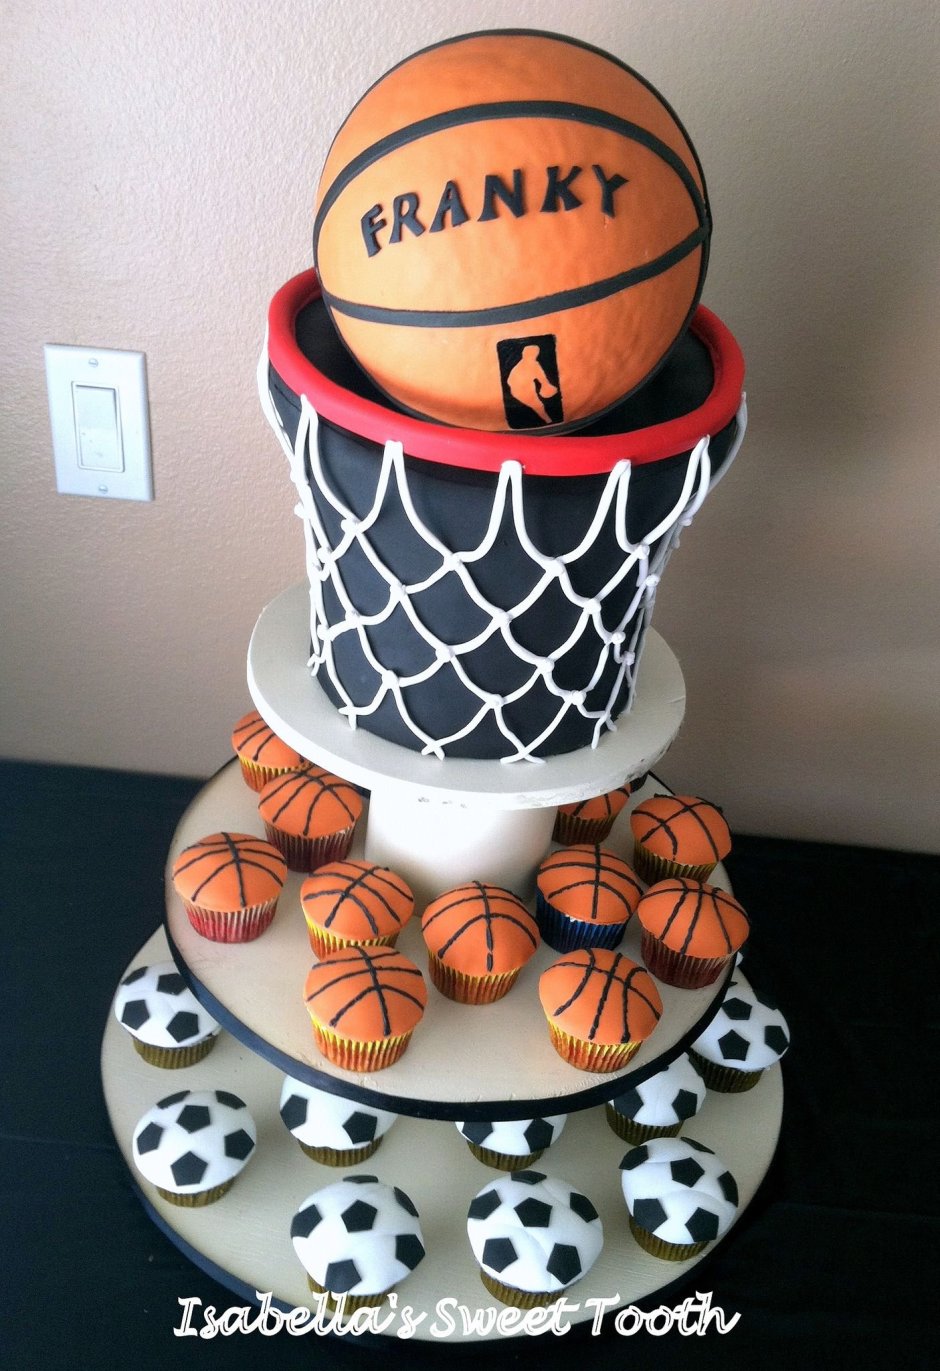 Пирожные баскетбольная тема